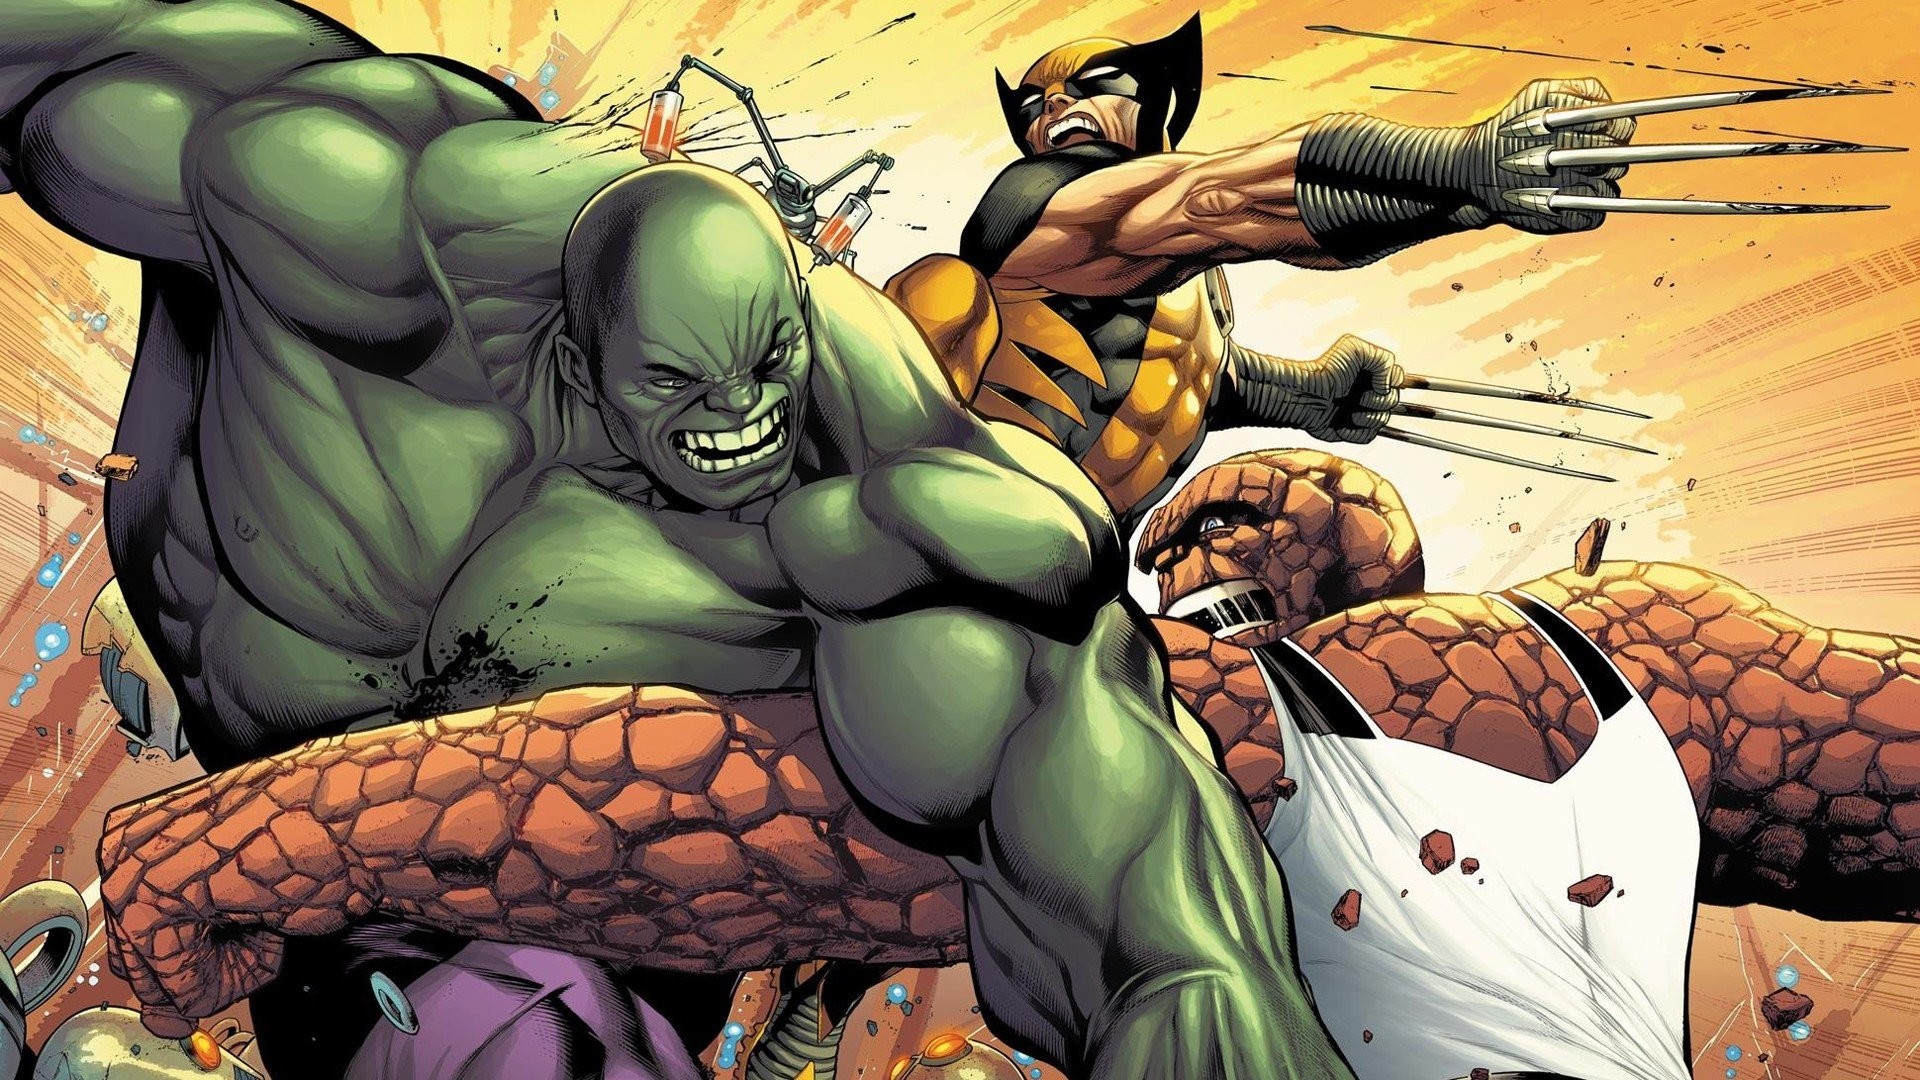 1920x1080 Hulk (comic character) comics Wolverine battles Thing (Ben Grimm) wallpaper  |  | 252353 | WallpaperUP